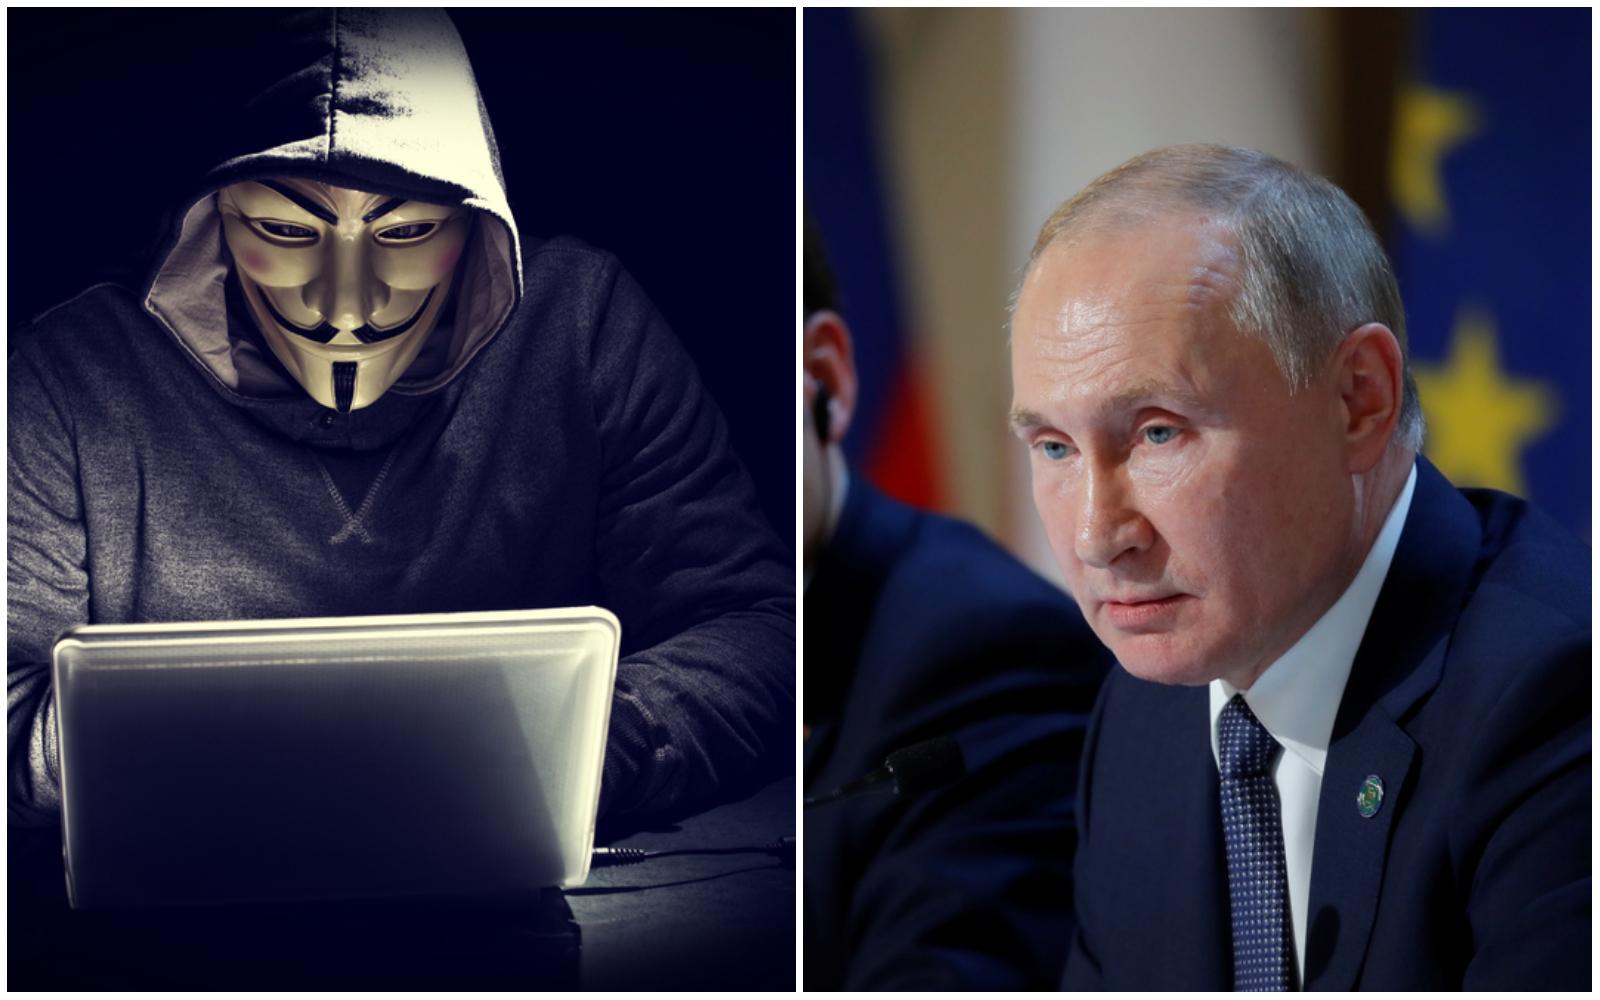 Hackerii de la Anonymous, o nouă „lovitură” grea pentru Vladimir Putin! Gruparea a atacat site-ul FSB (serviciul secret al Rusiei)